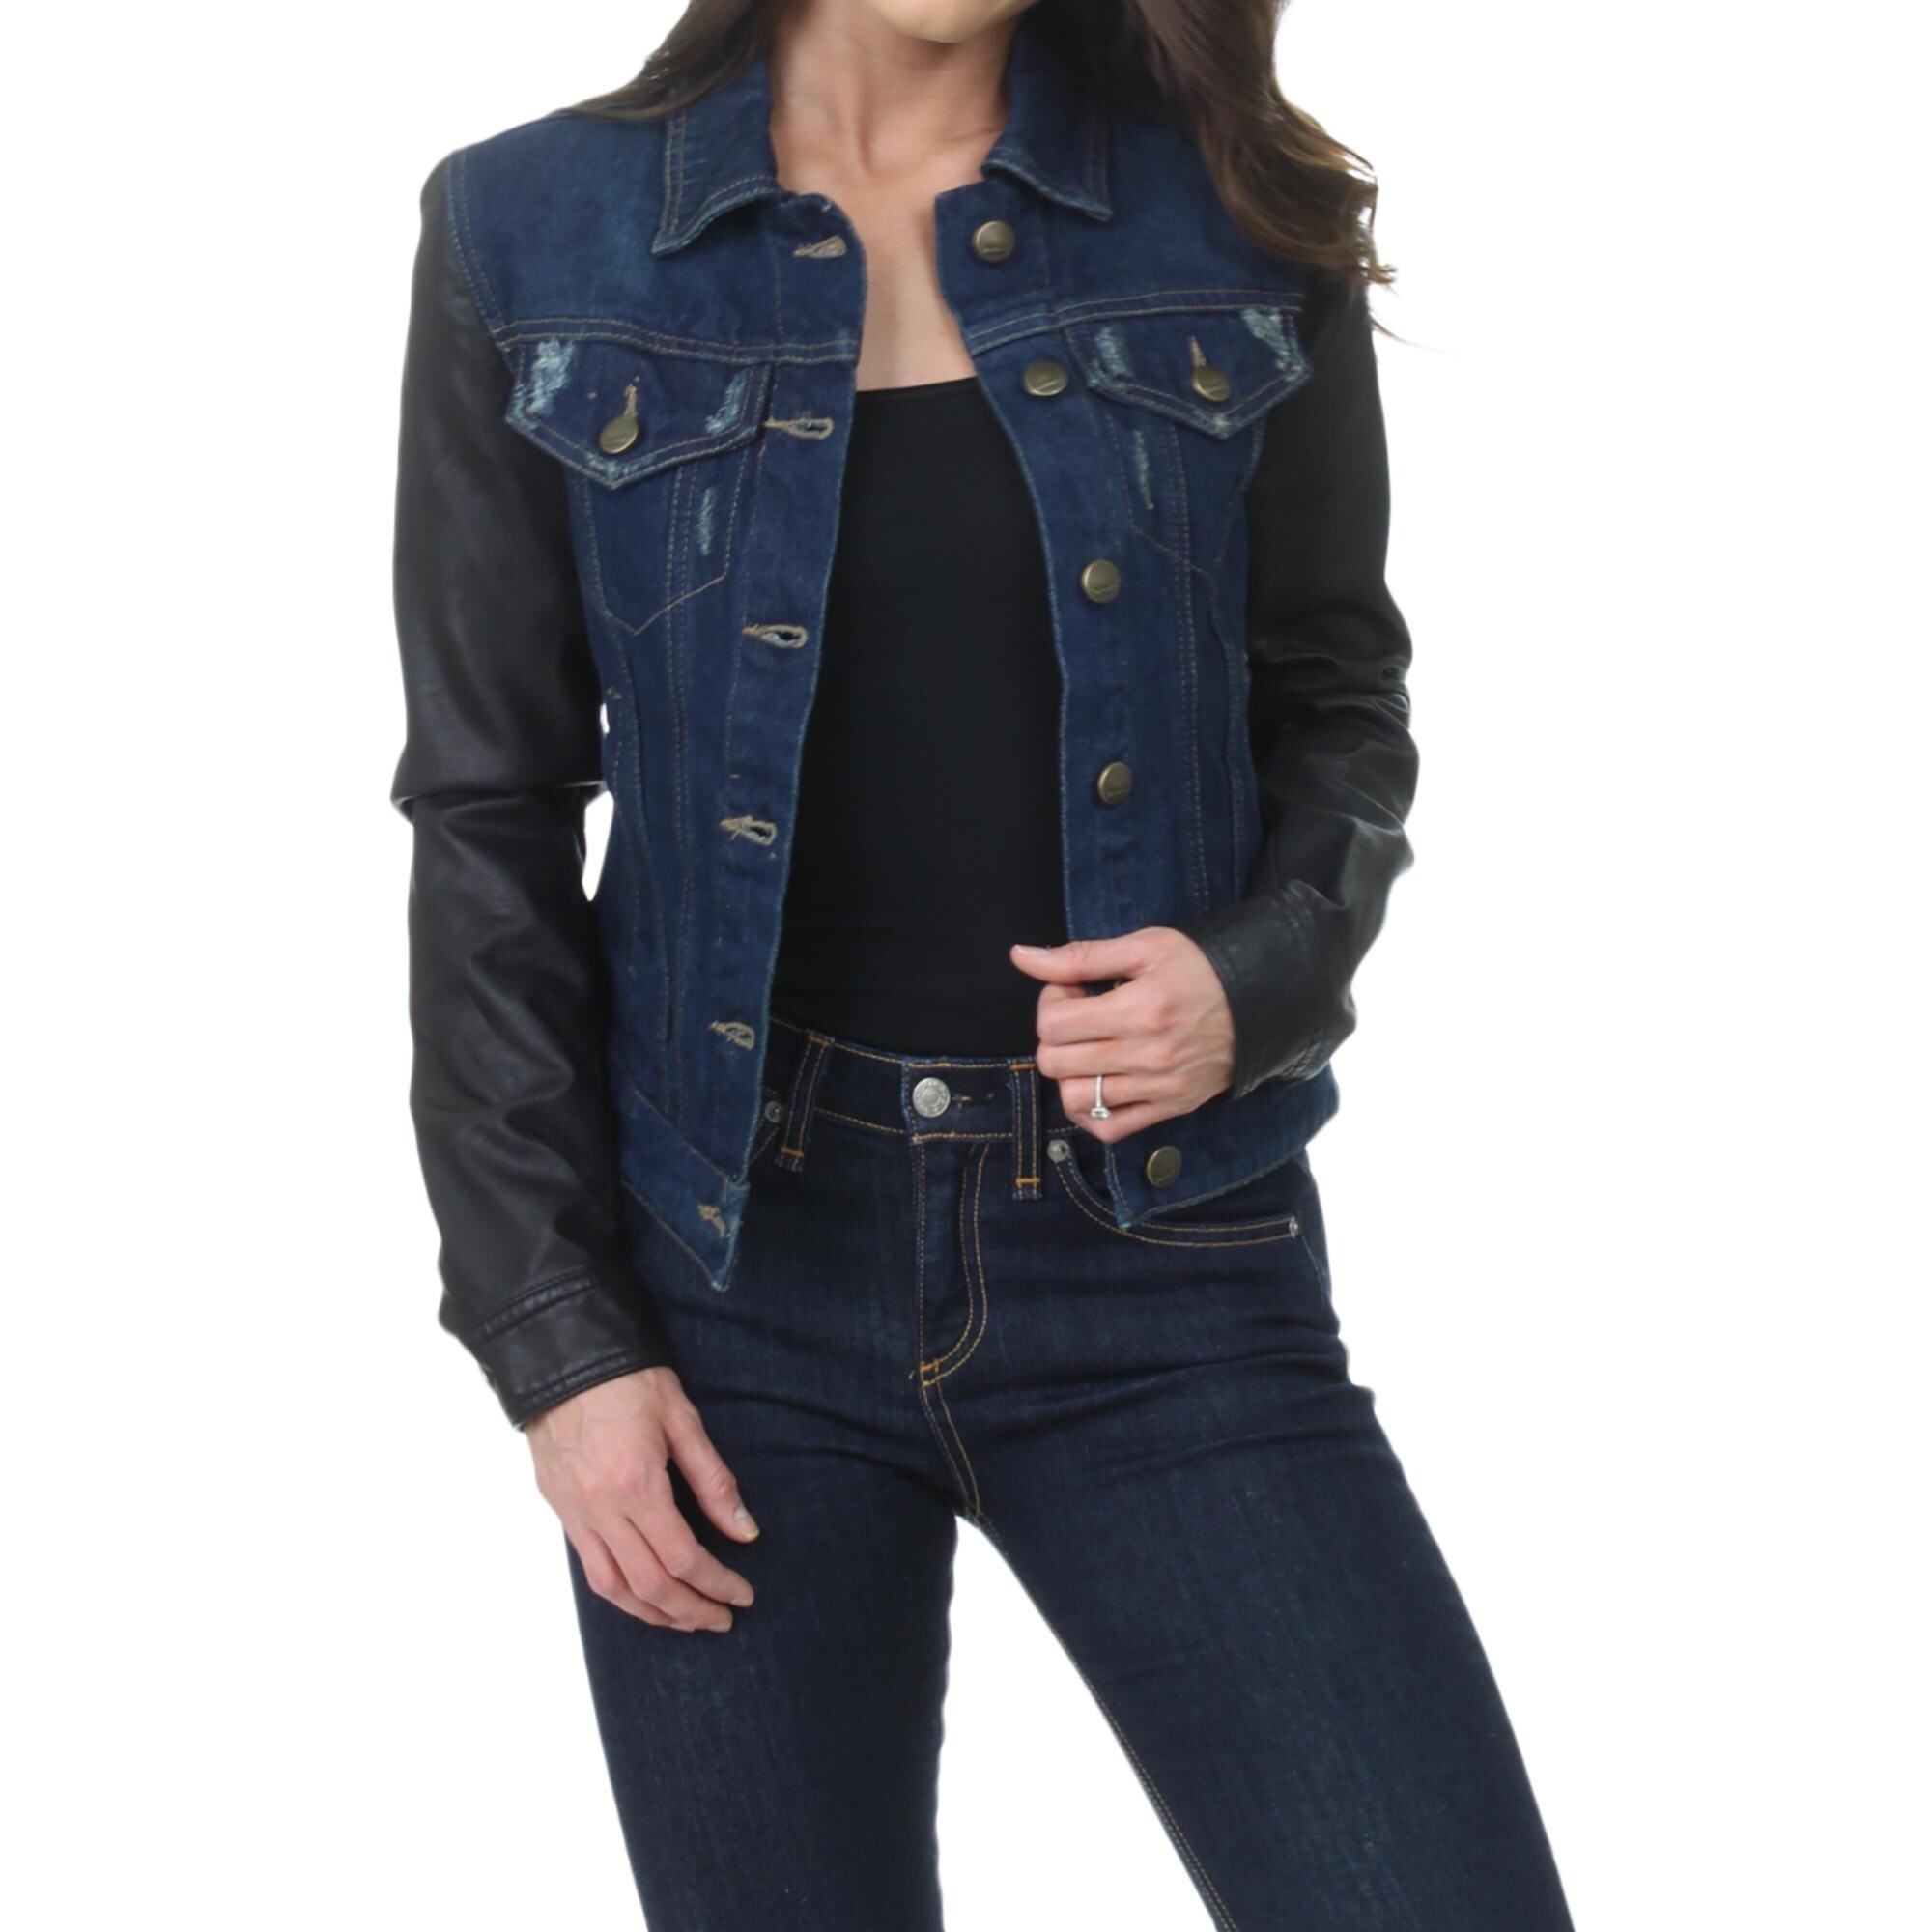 women's distressed blue jean jacket